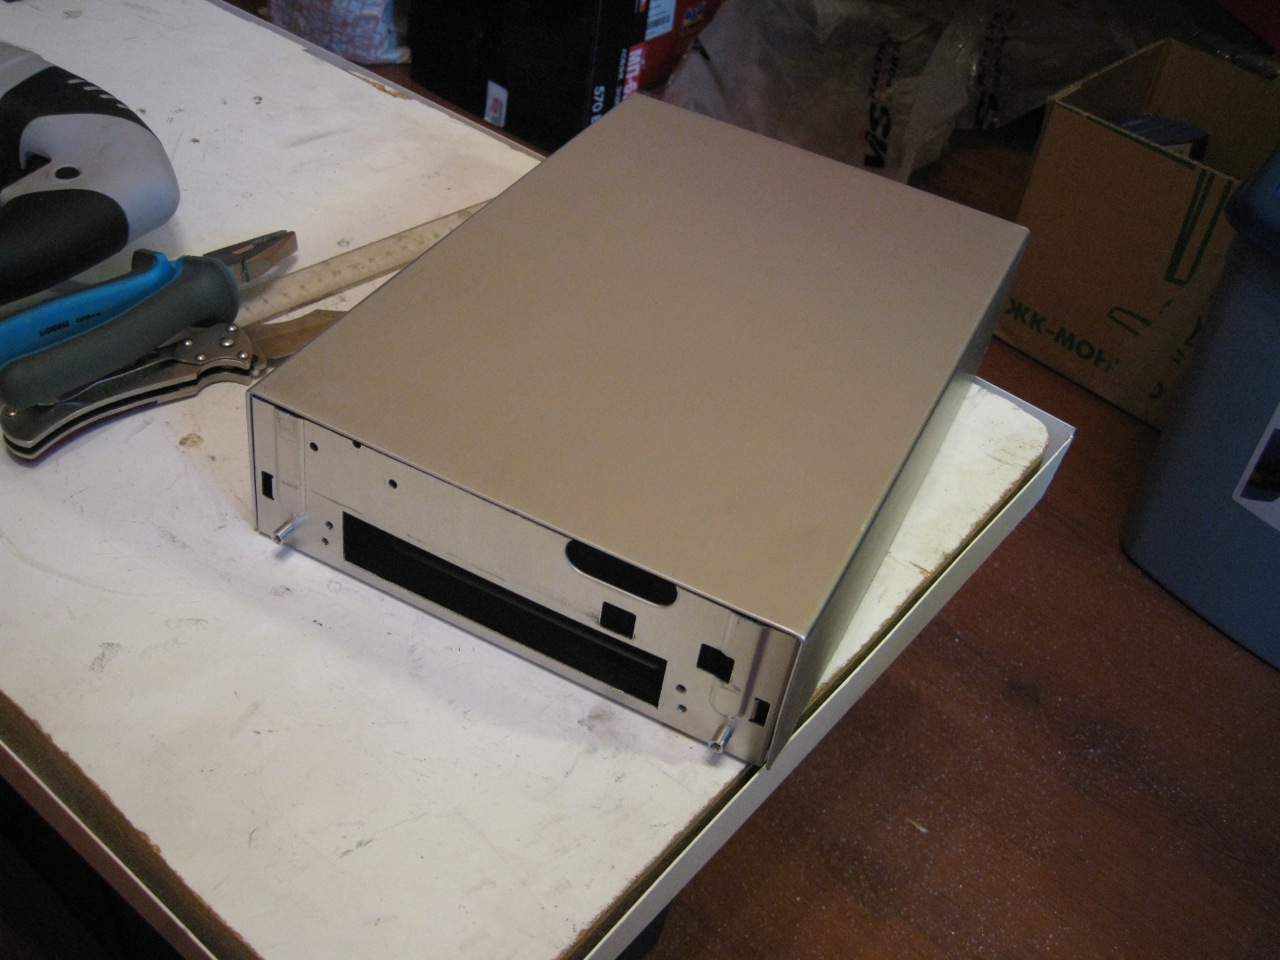 Installing a Computer in a car - Toyota Celica 20L 2000